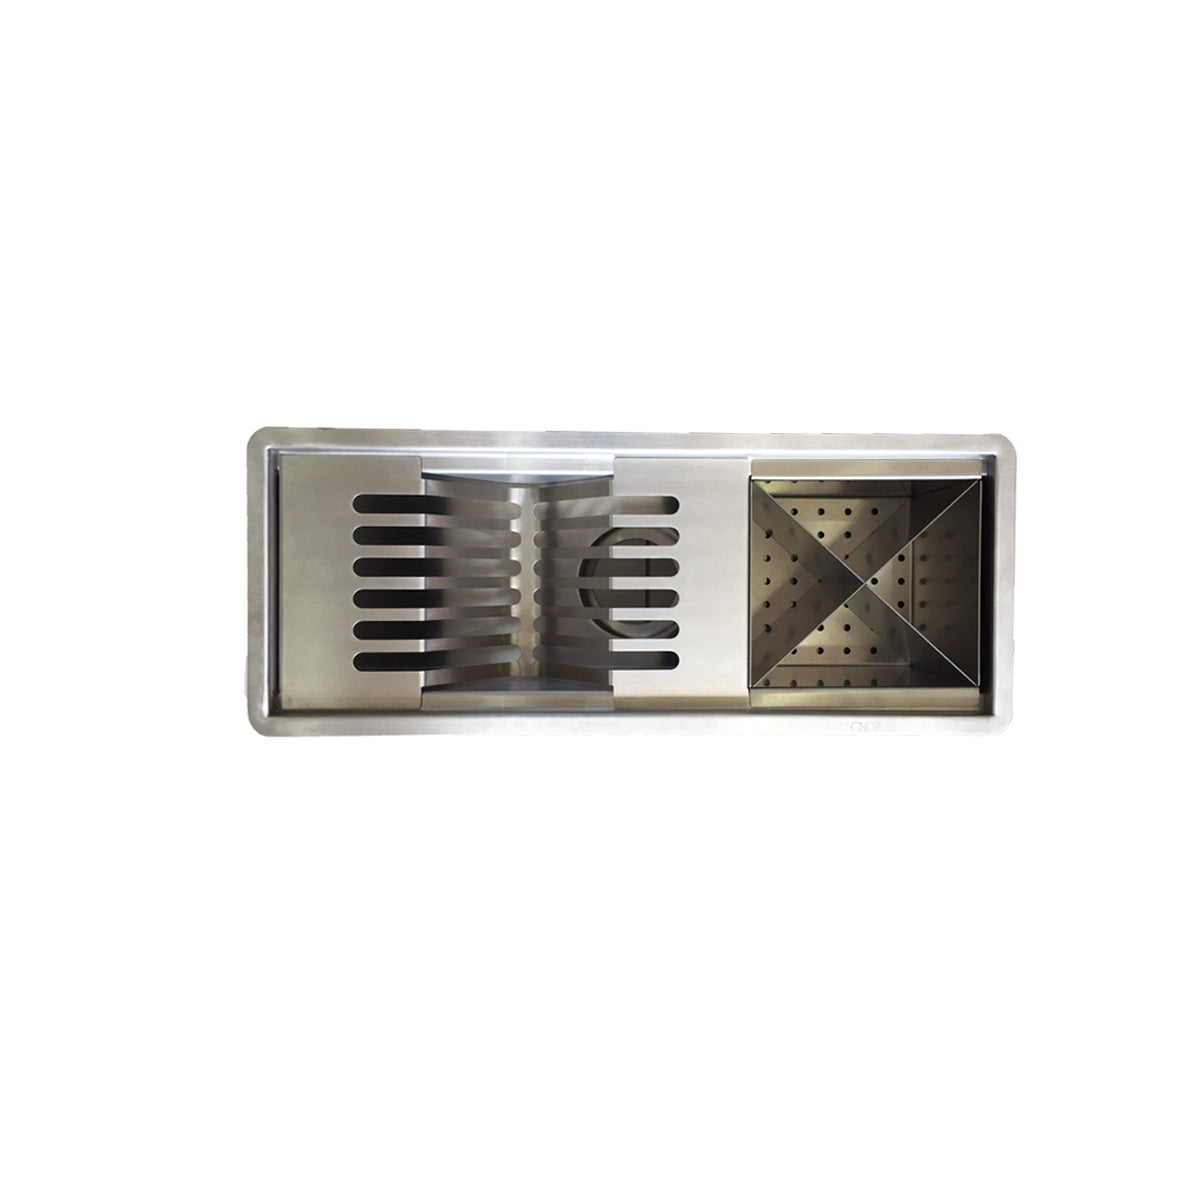 Dish rack for big drawers WIZARD X, base module 45 EU